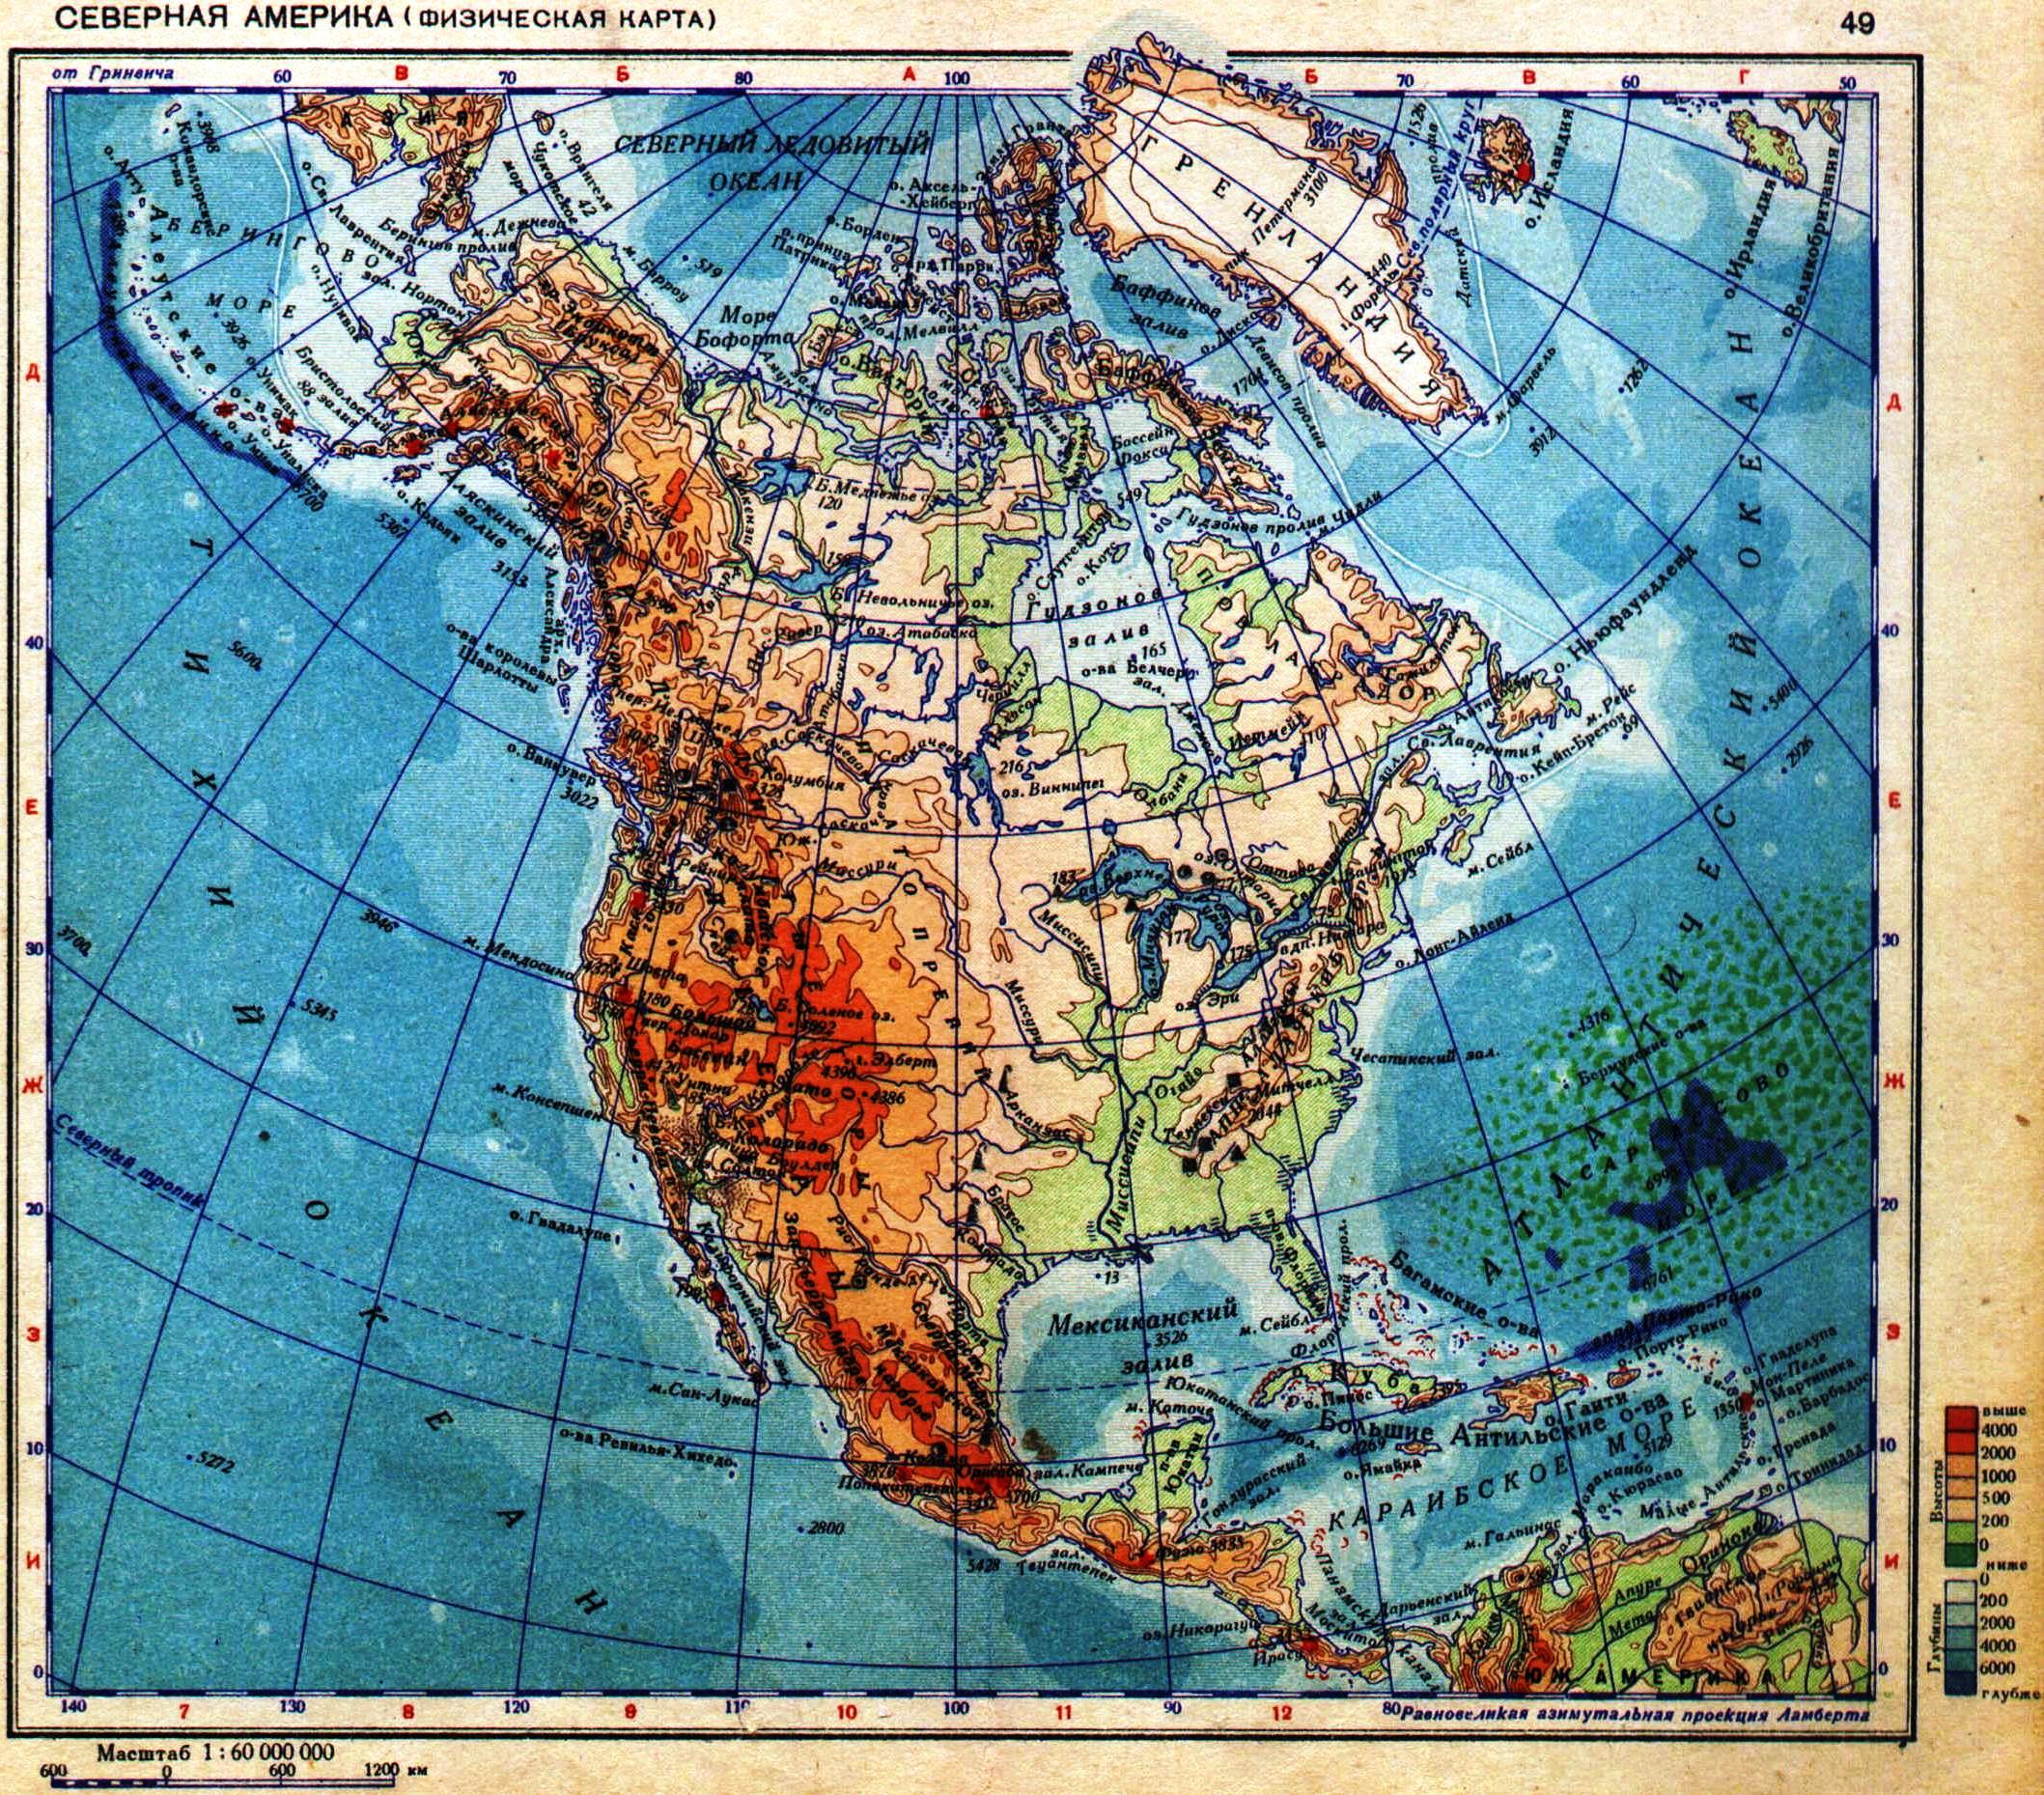 Горы северной америки физическая карта. Карта Северной Америки географическая. Северная Америка на карте физическая карта. Карта Северной Америки географическая крупная. География физическая карта Северной Америки.